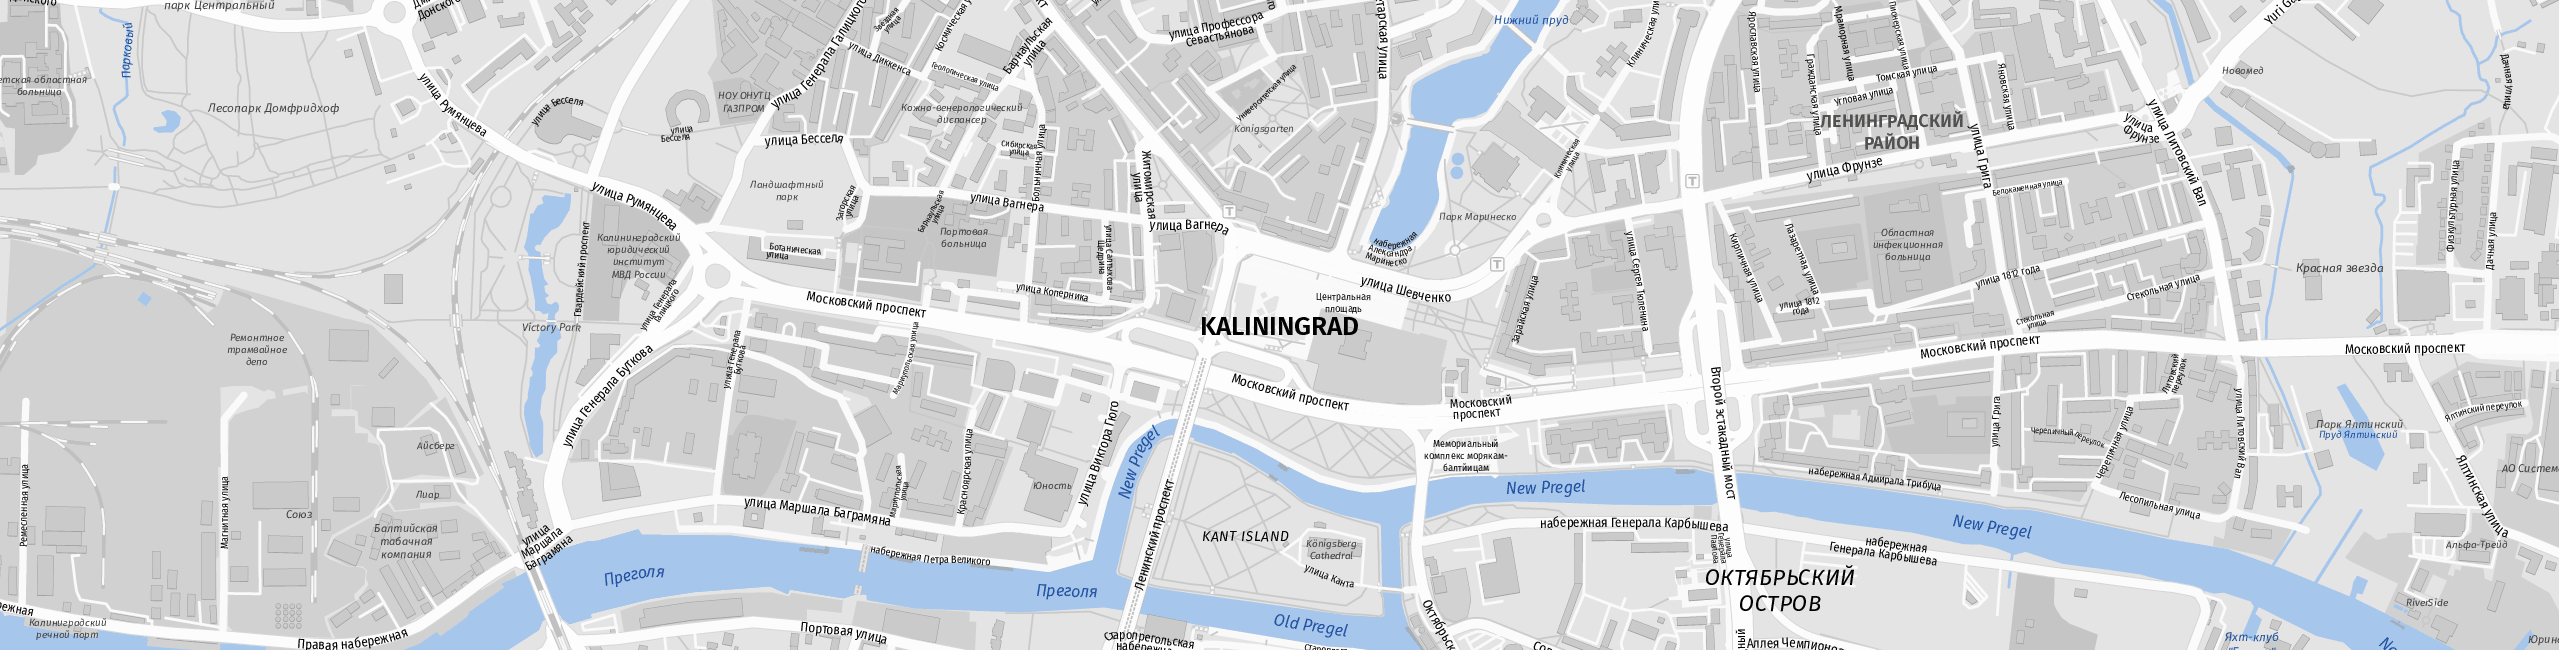 Stadtplan Kaliningrad zum Downloaden.